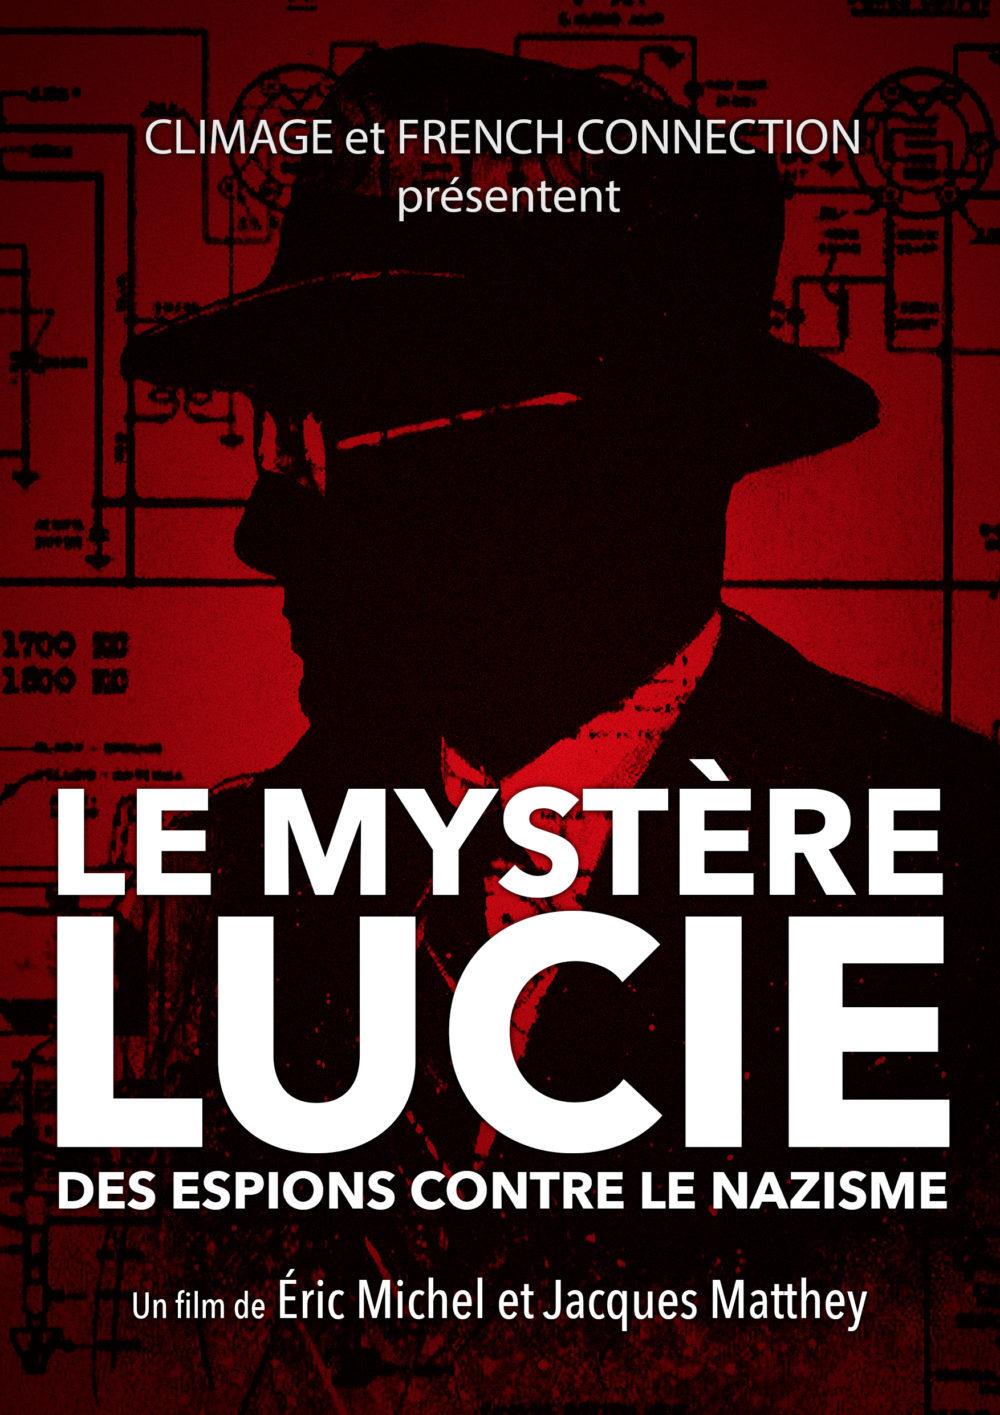 Le Mystère Lucie